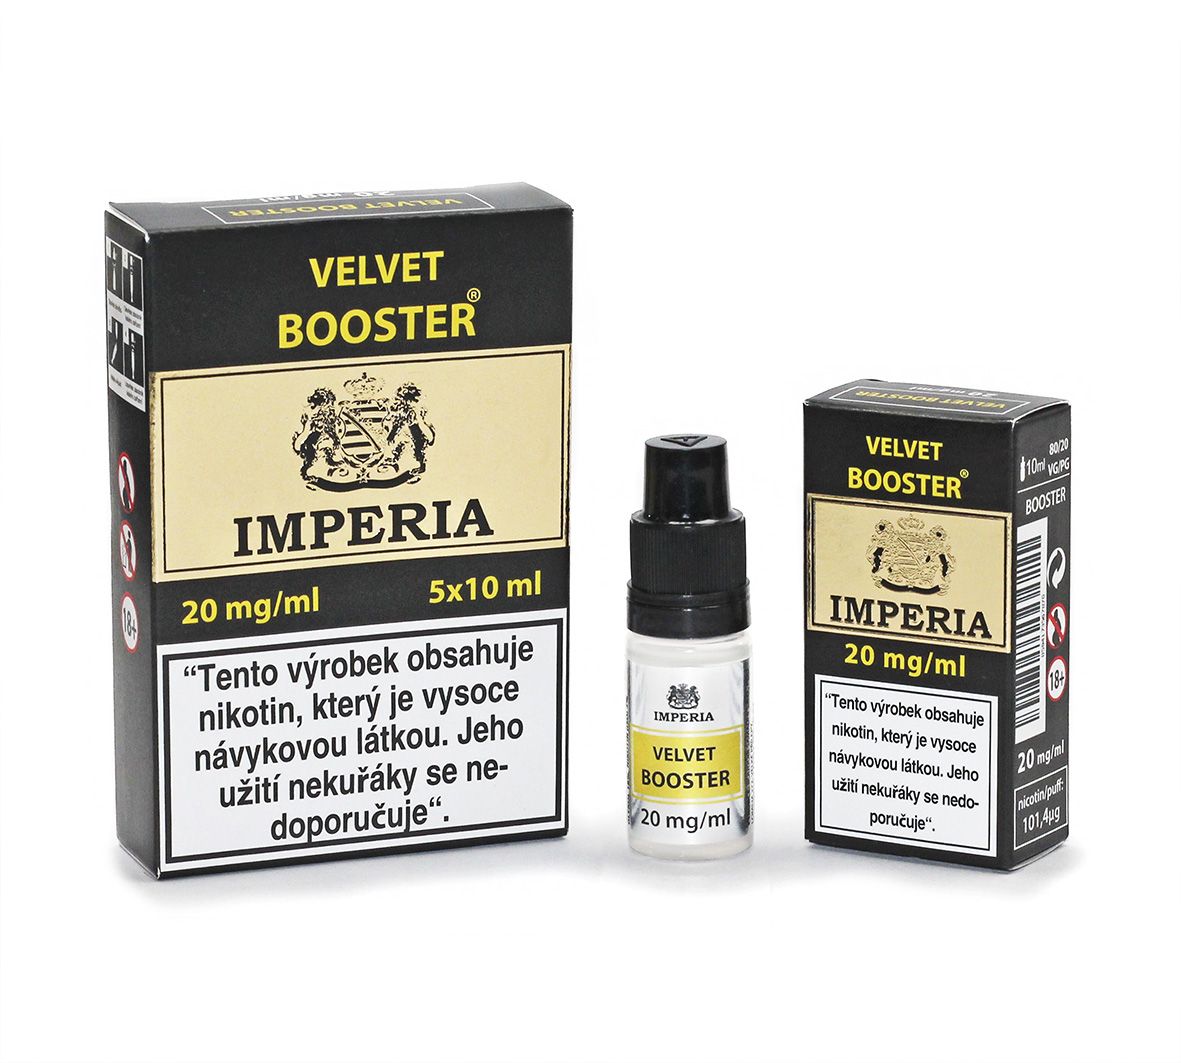 IMPERIA Velvet Booster 20mg - 5x10ml (20PG/80VG)